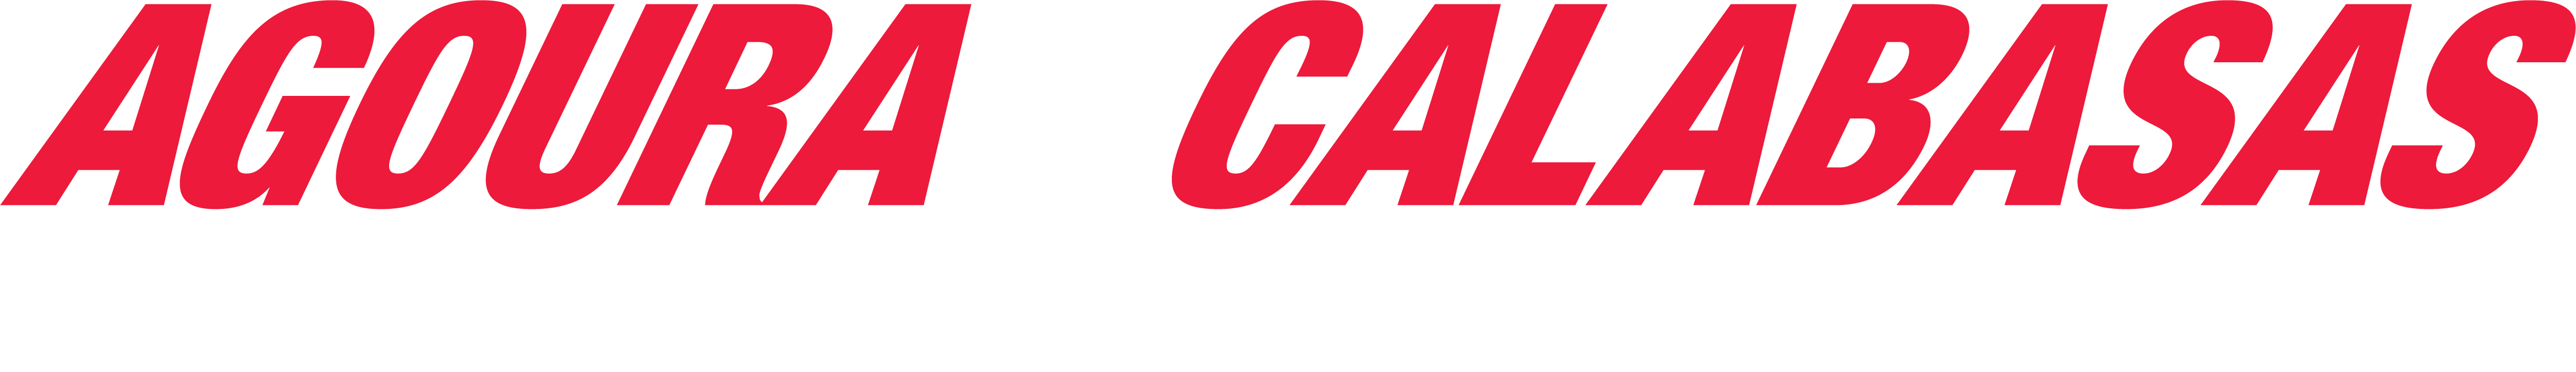 Calabasas Car Care